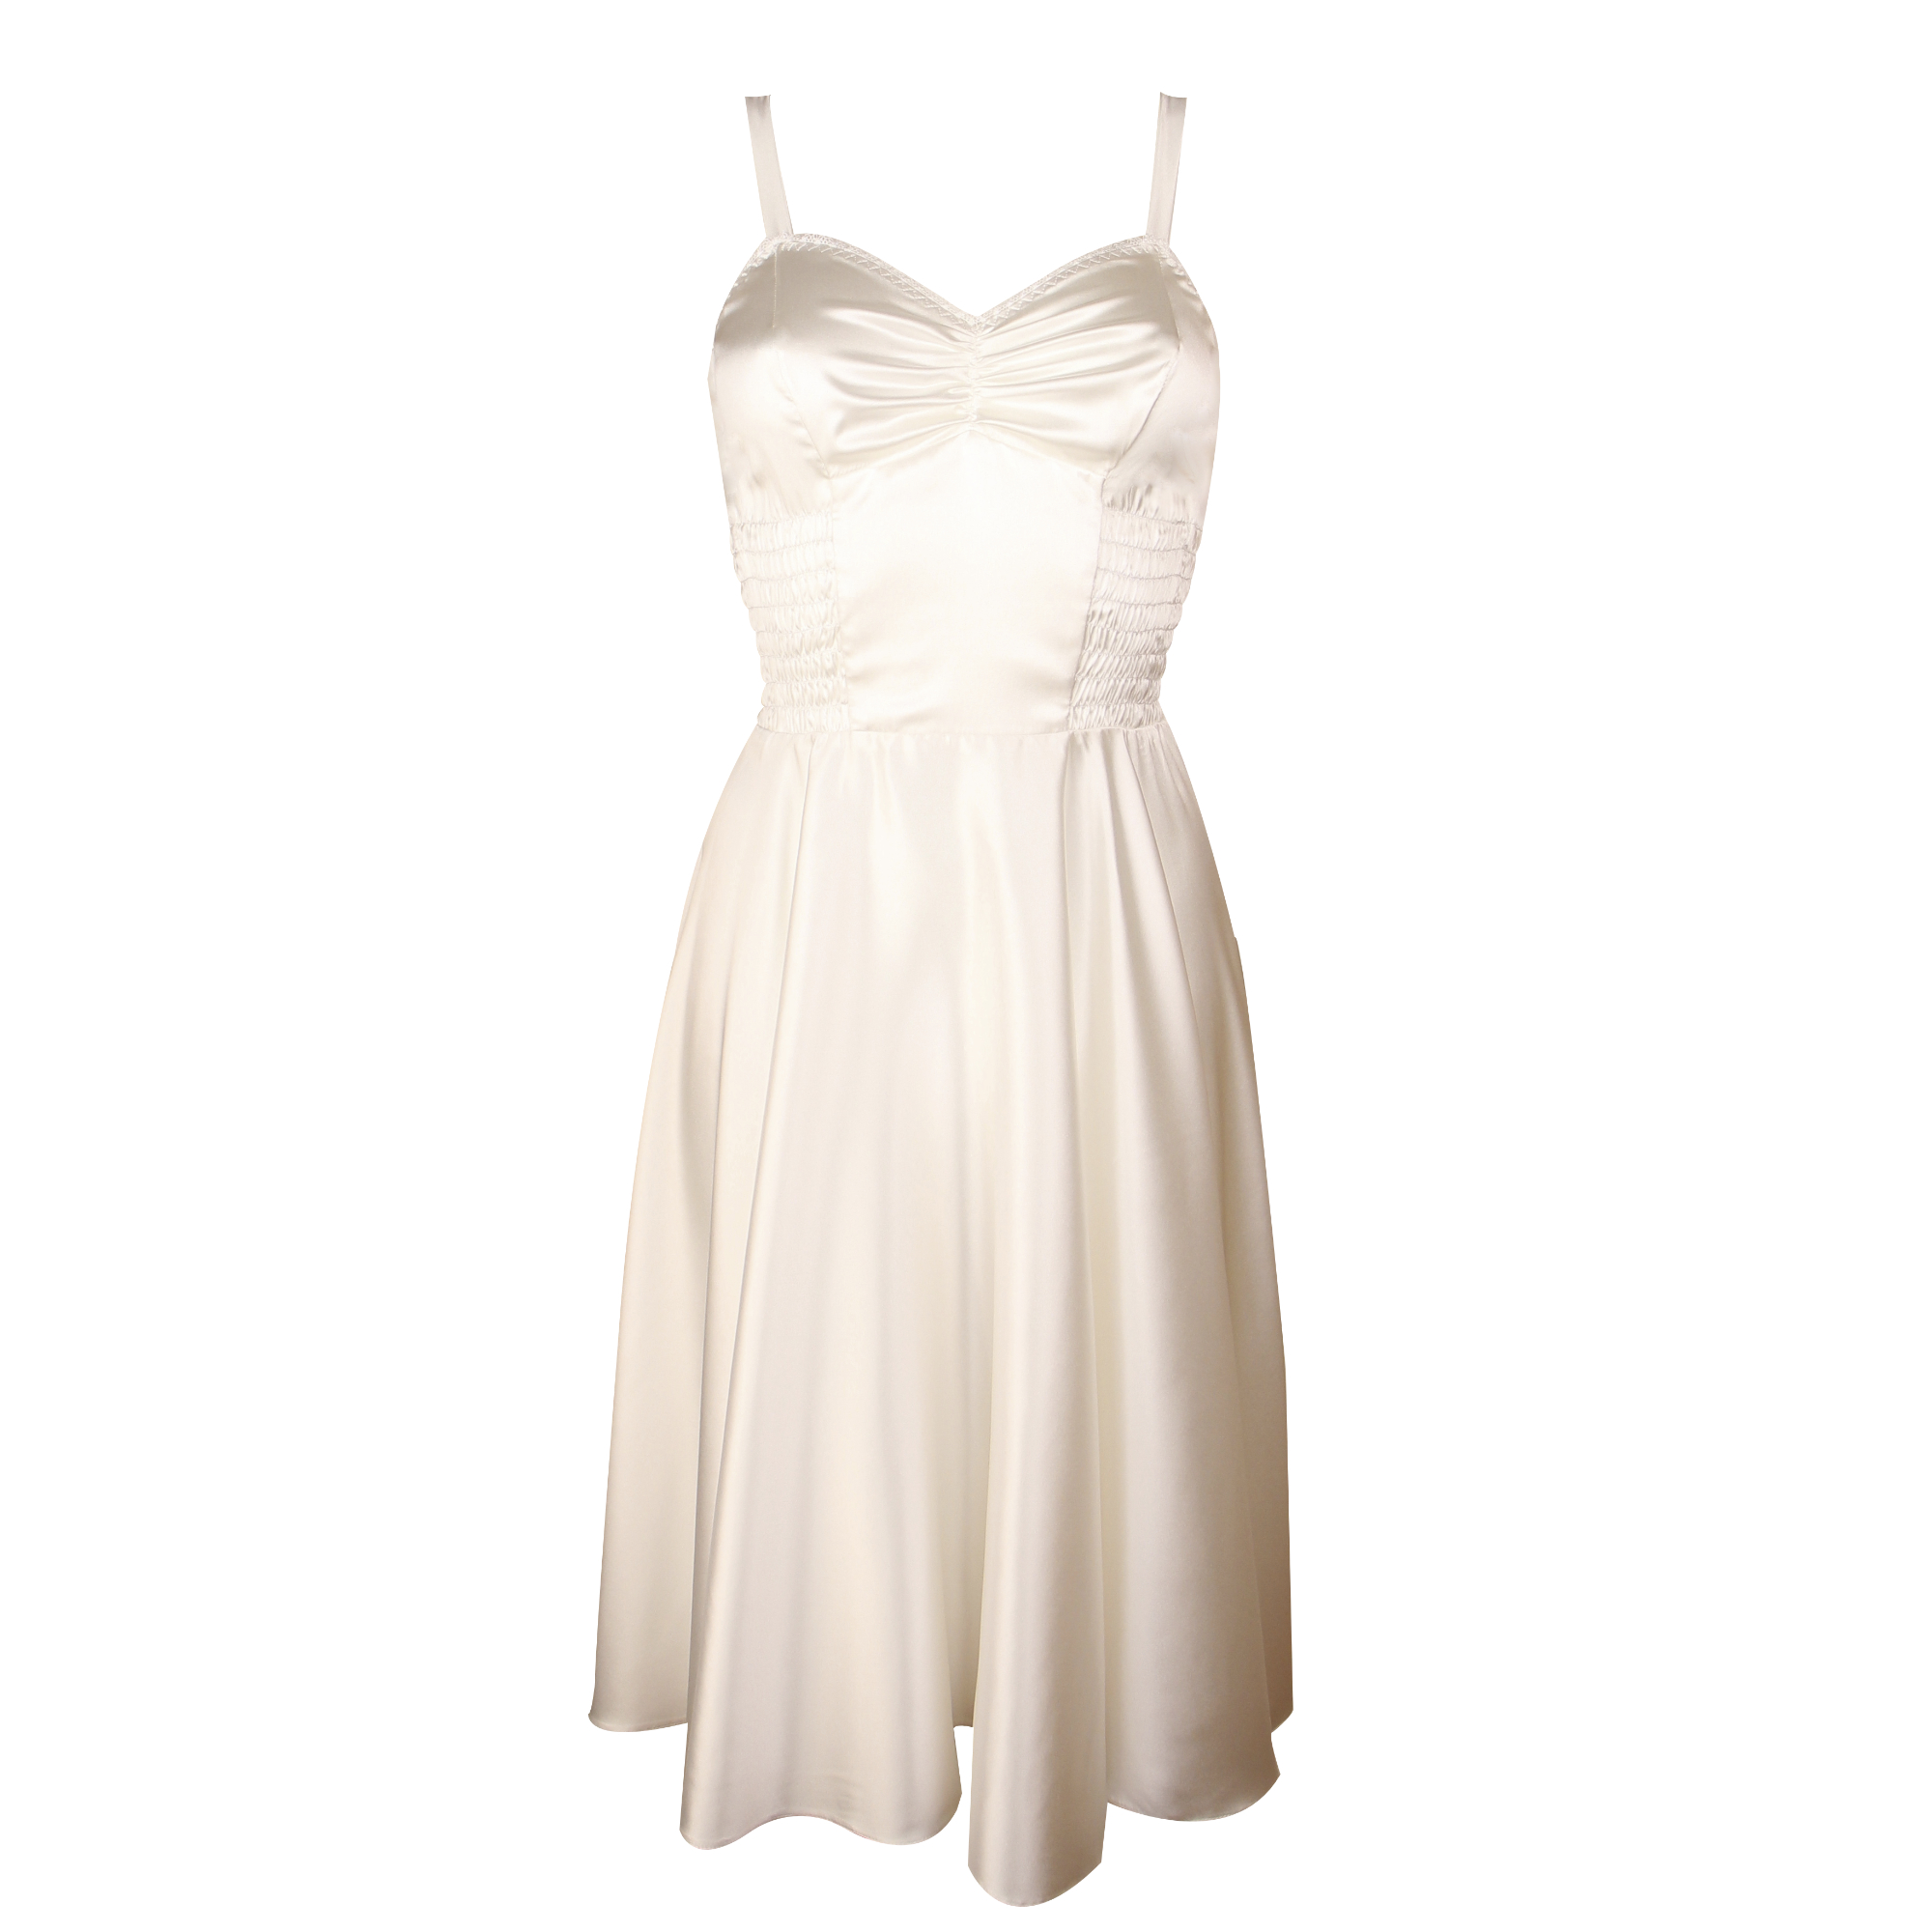 “Helga” dress | Fifi Chachnil - Official website